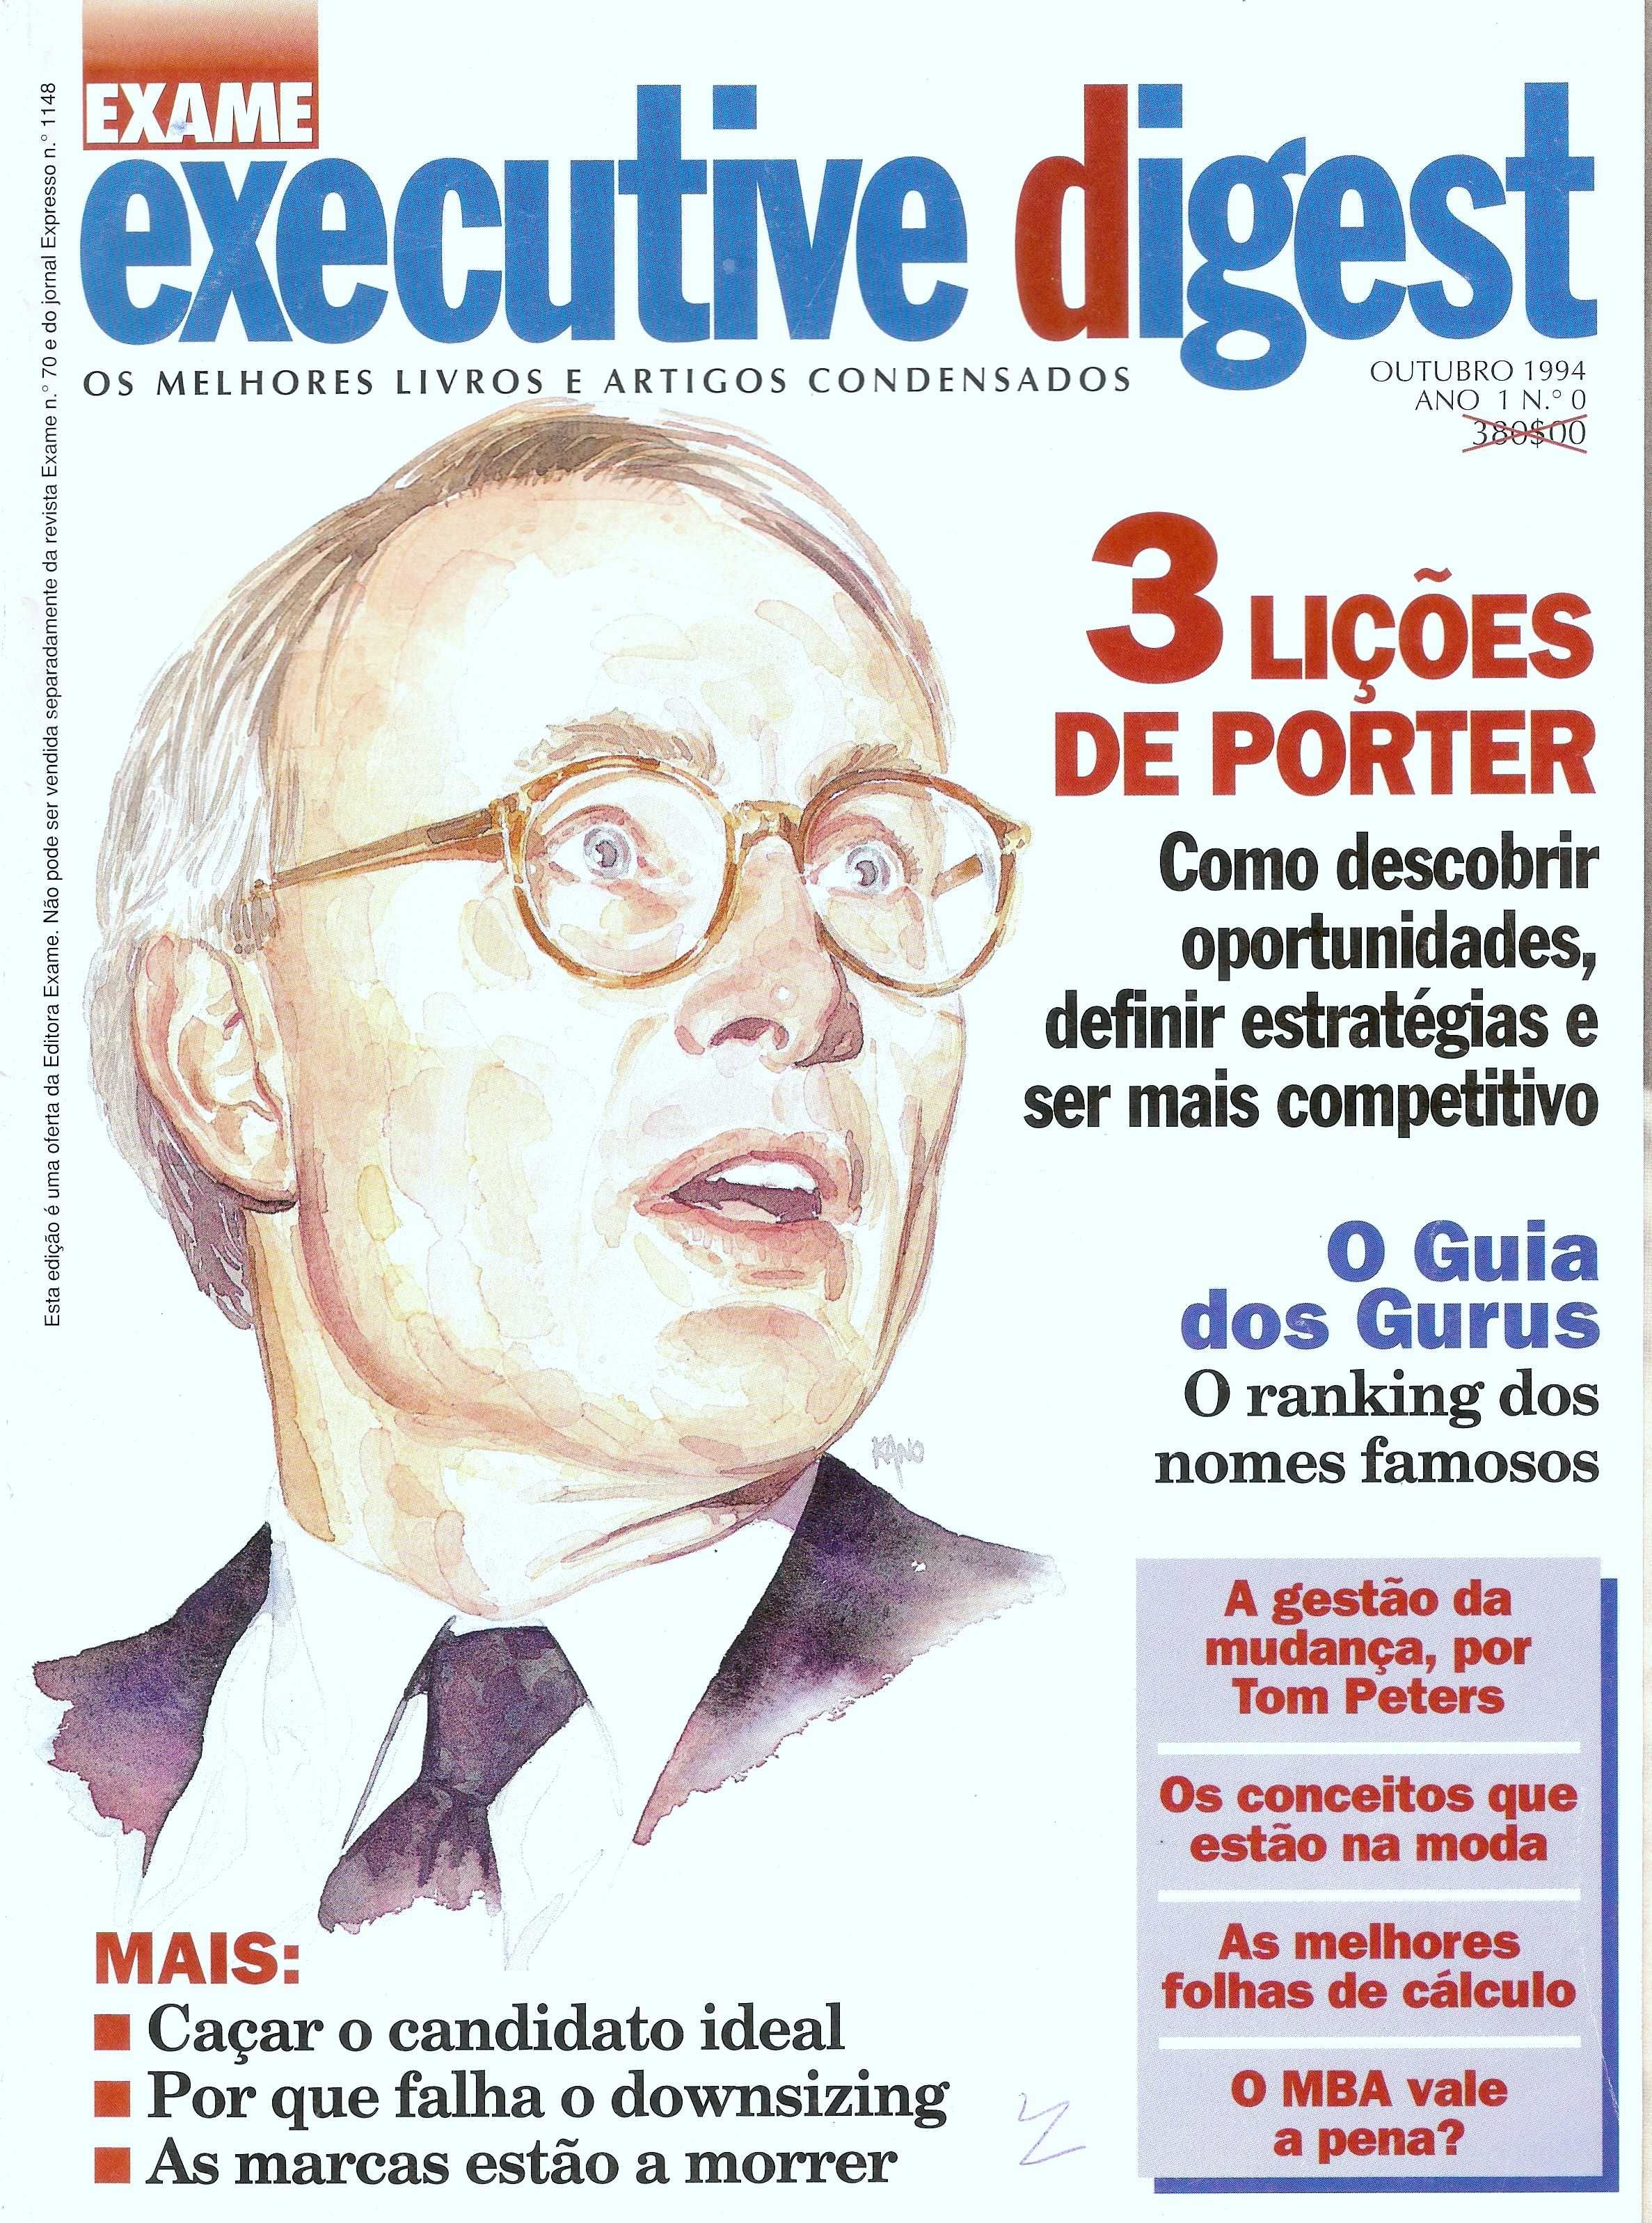 Michael Porter número 0 da Exame Executive Digest 1994